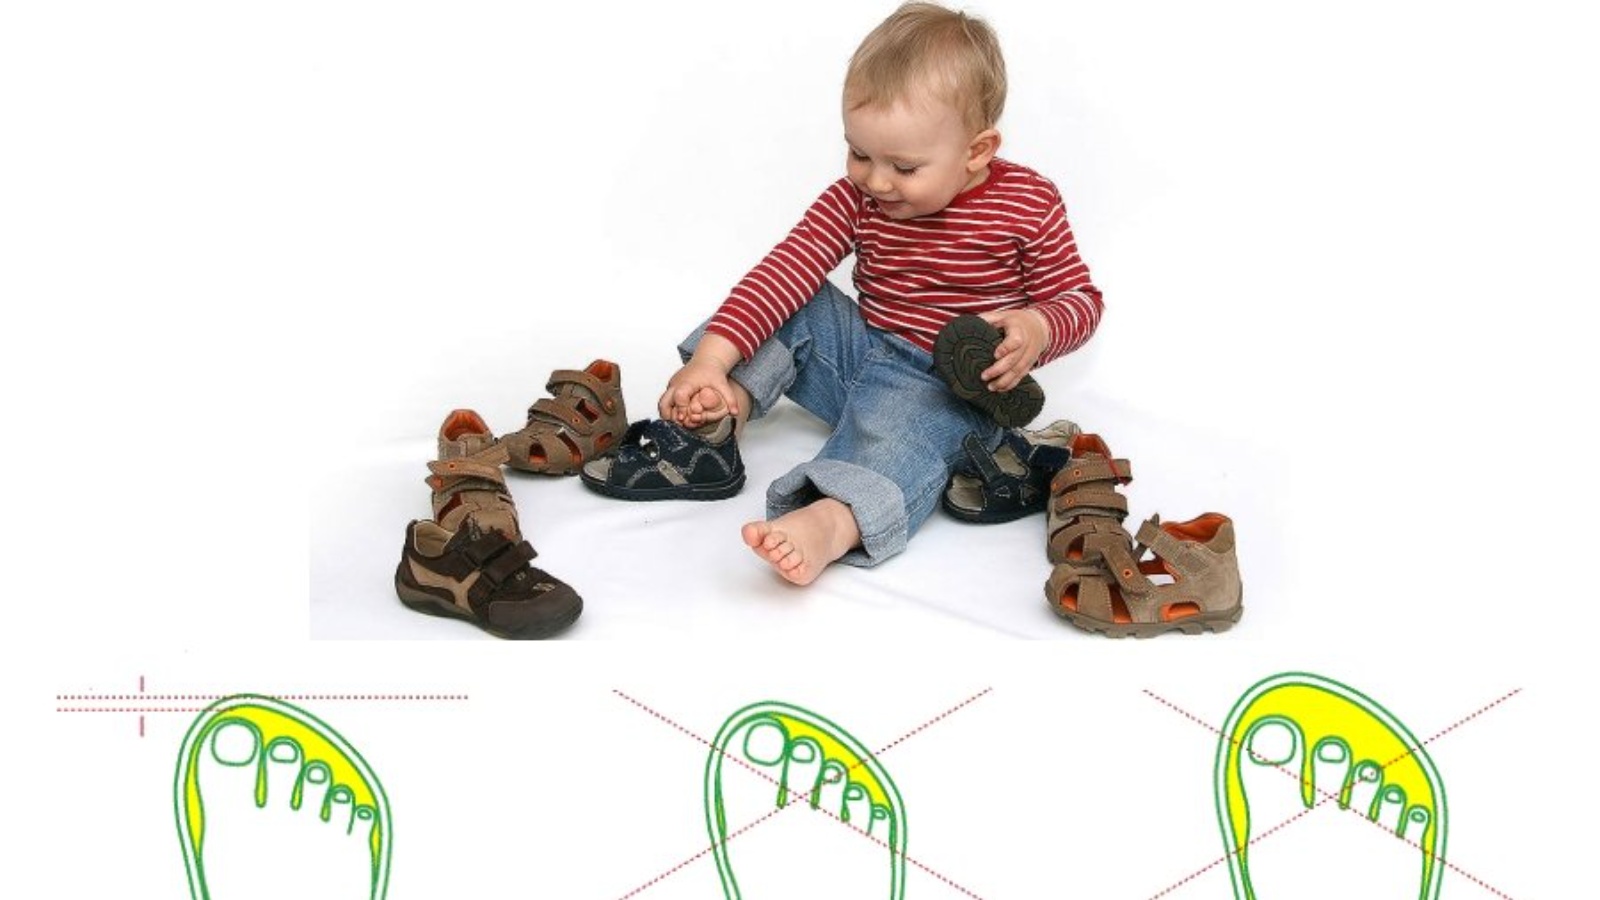 Как правильно подобрать размер ребенка. Как правильно выбрать обувь ребенку по размеру. Как правильно подобрать размер обуви ребенку в год. Запас обуви для ребенка. Правильная первая обувь для детей 1 года.